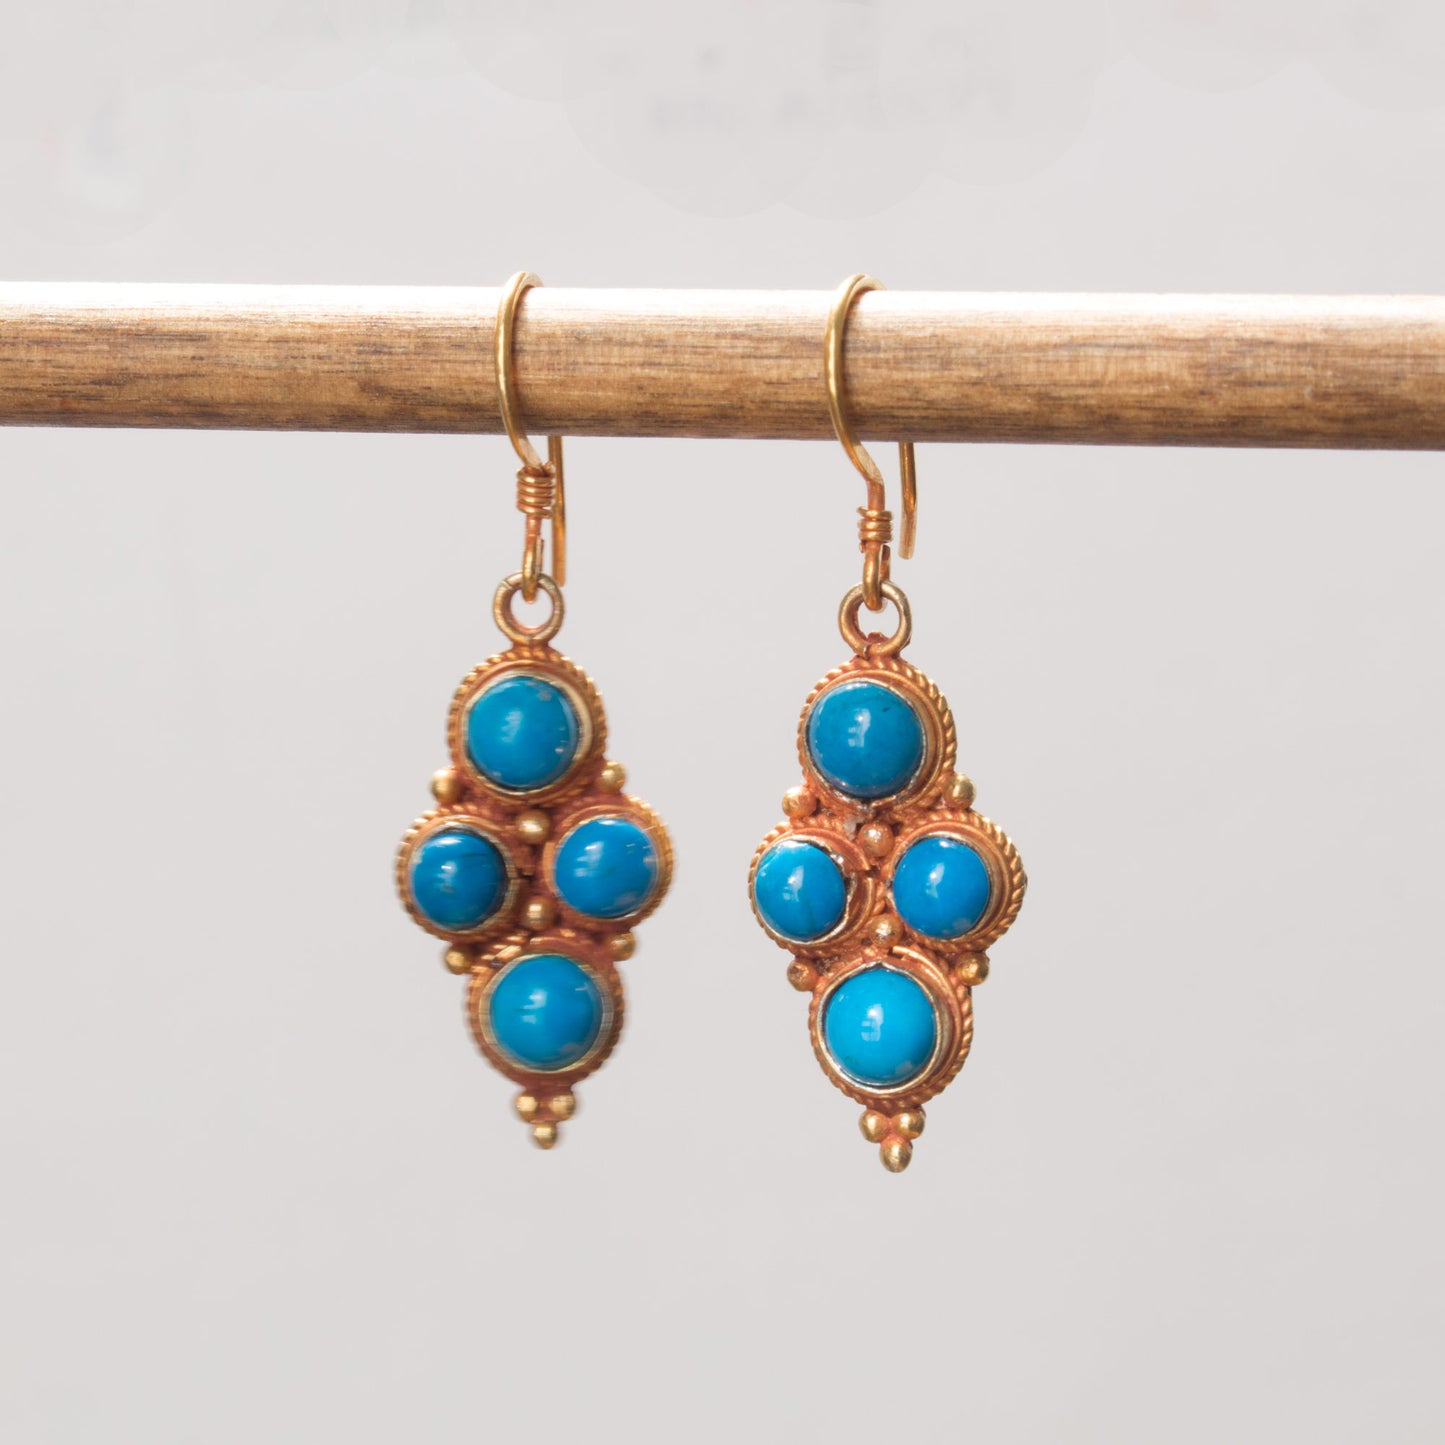 Turquoise vermeil earrings